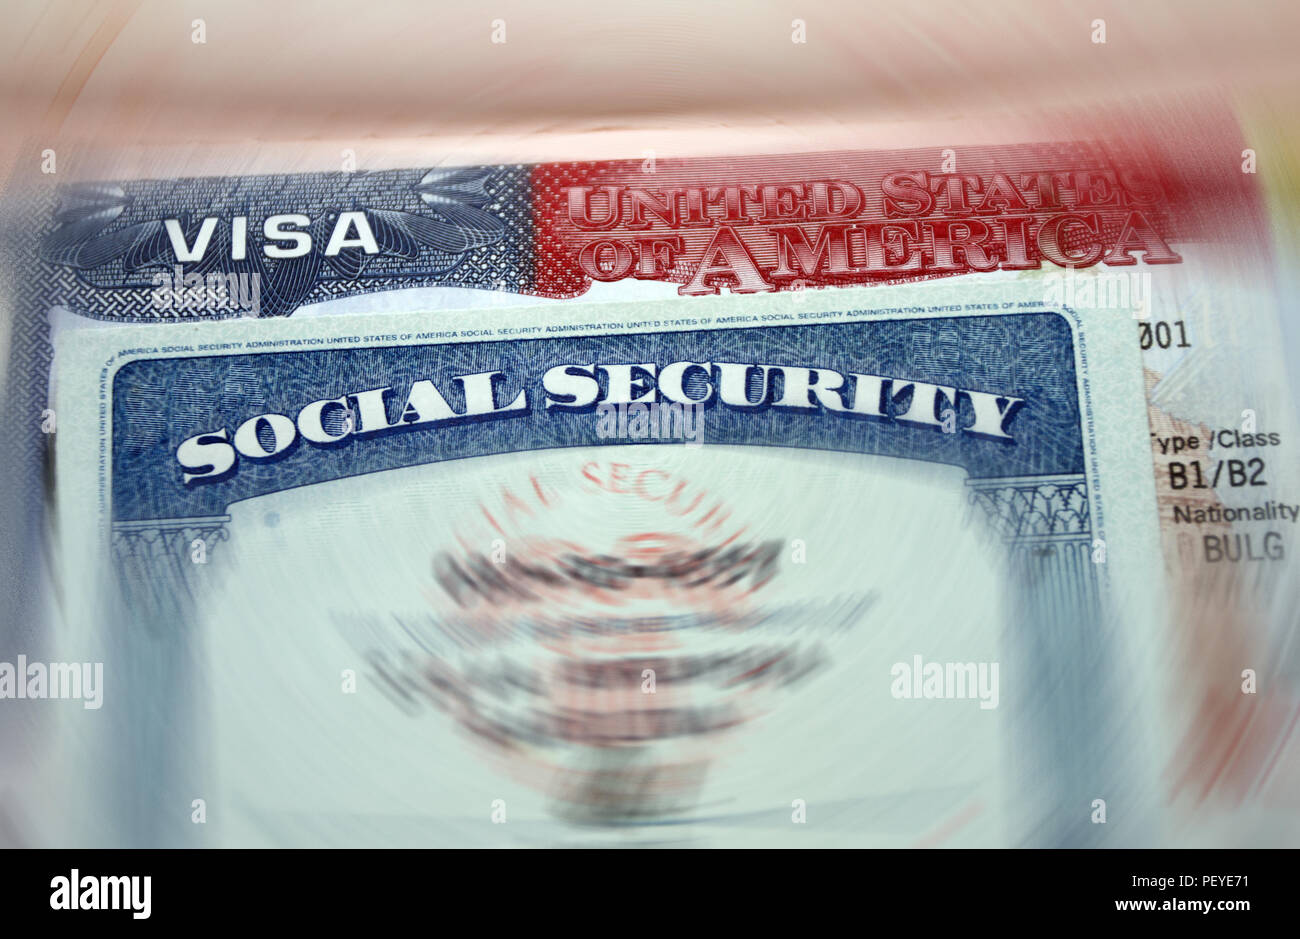 La American visa in un passaporto sfocata lo sfondo della pagina e il numero di previdenza sociale documento personale. SSN - numero di previdenza sociale per vivere in Stati Uniti d'America - s Foto Stock